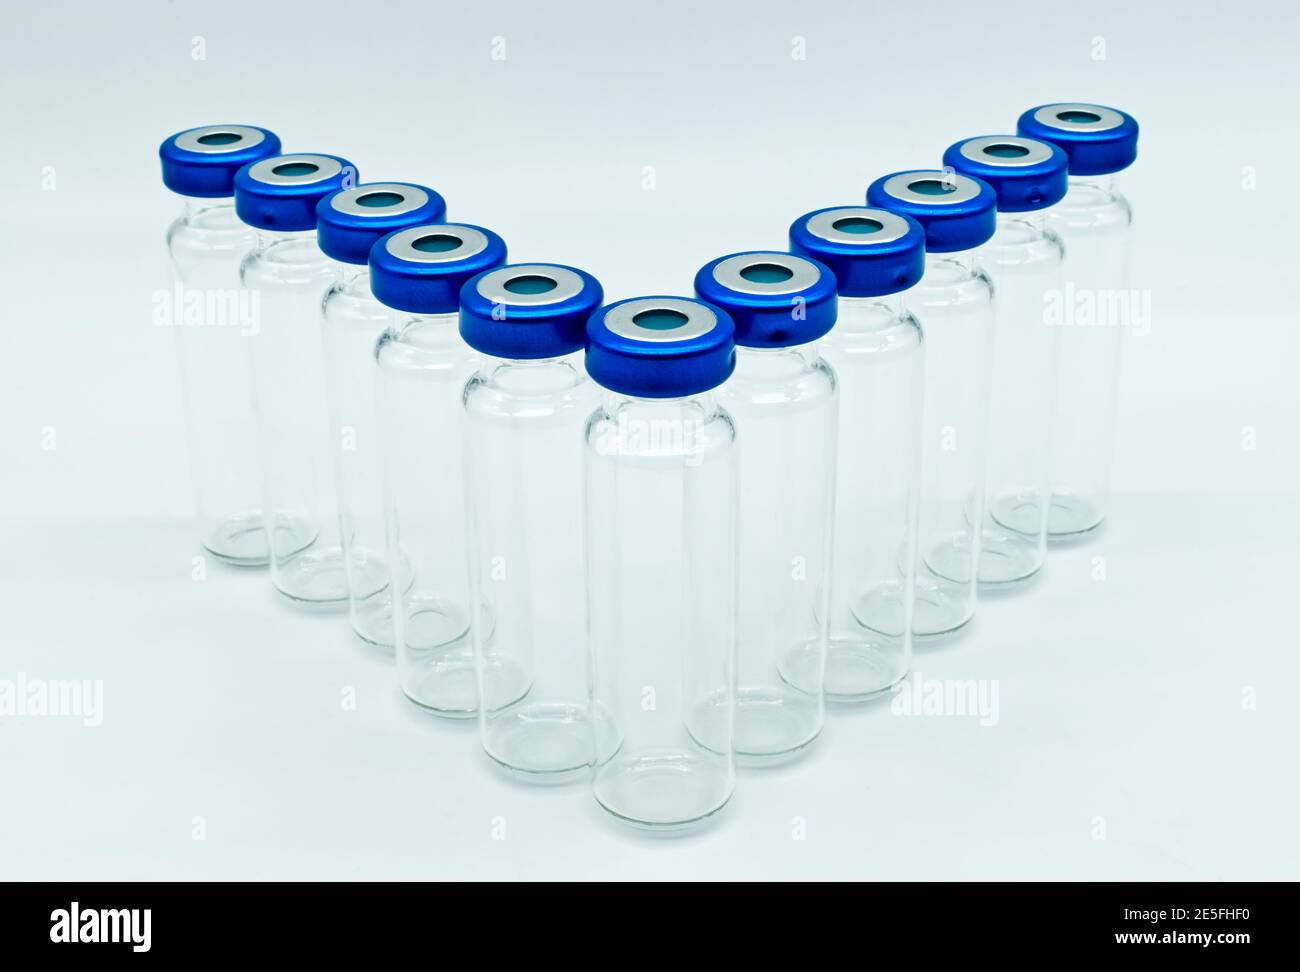 Fila di flaconcini medici in vetro trasparente per iniezione con coperchi sigillati blu, isolati su sfondo bianco. Foto Stock